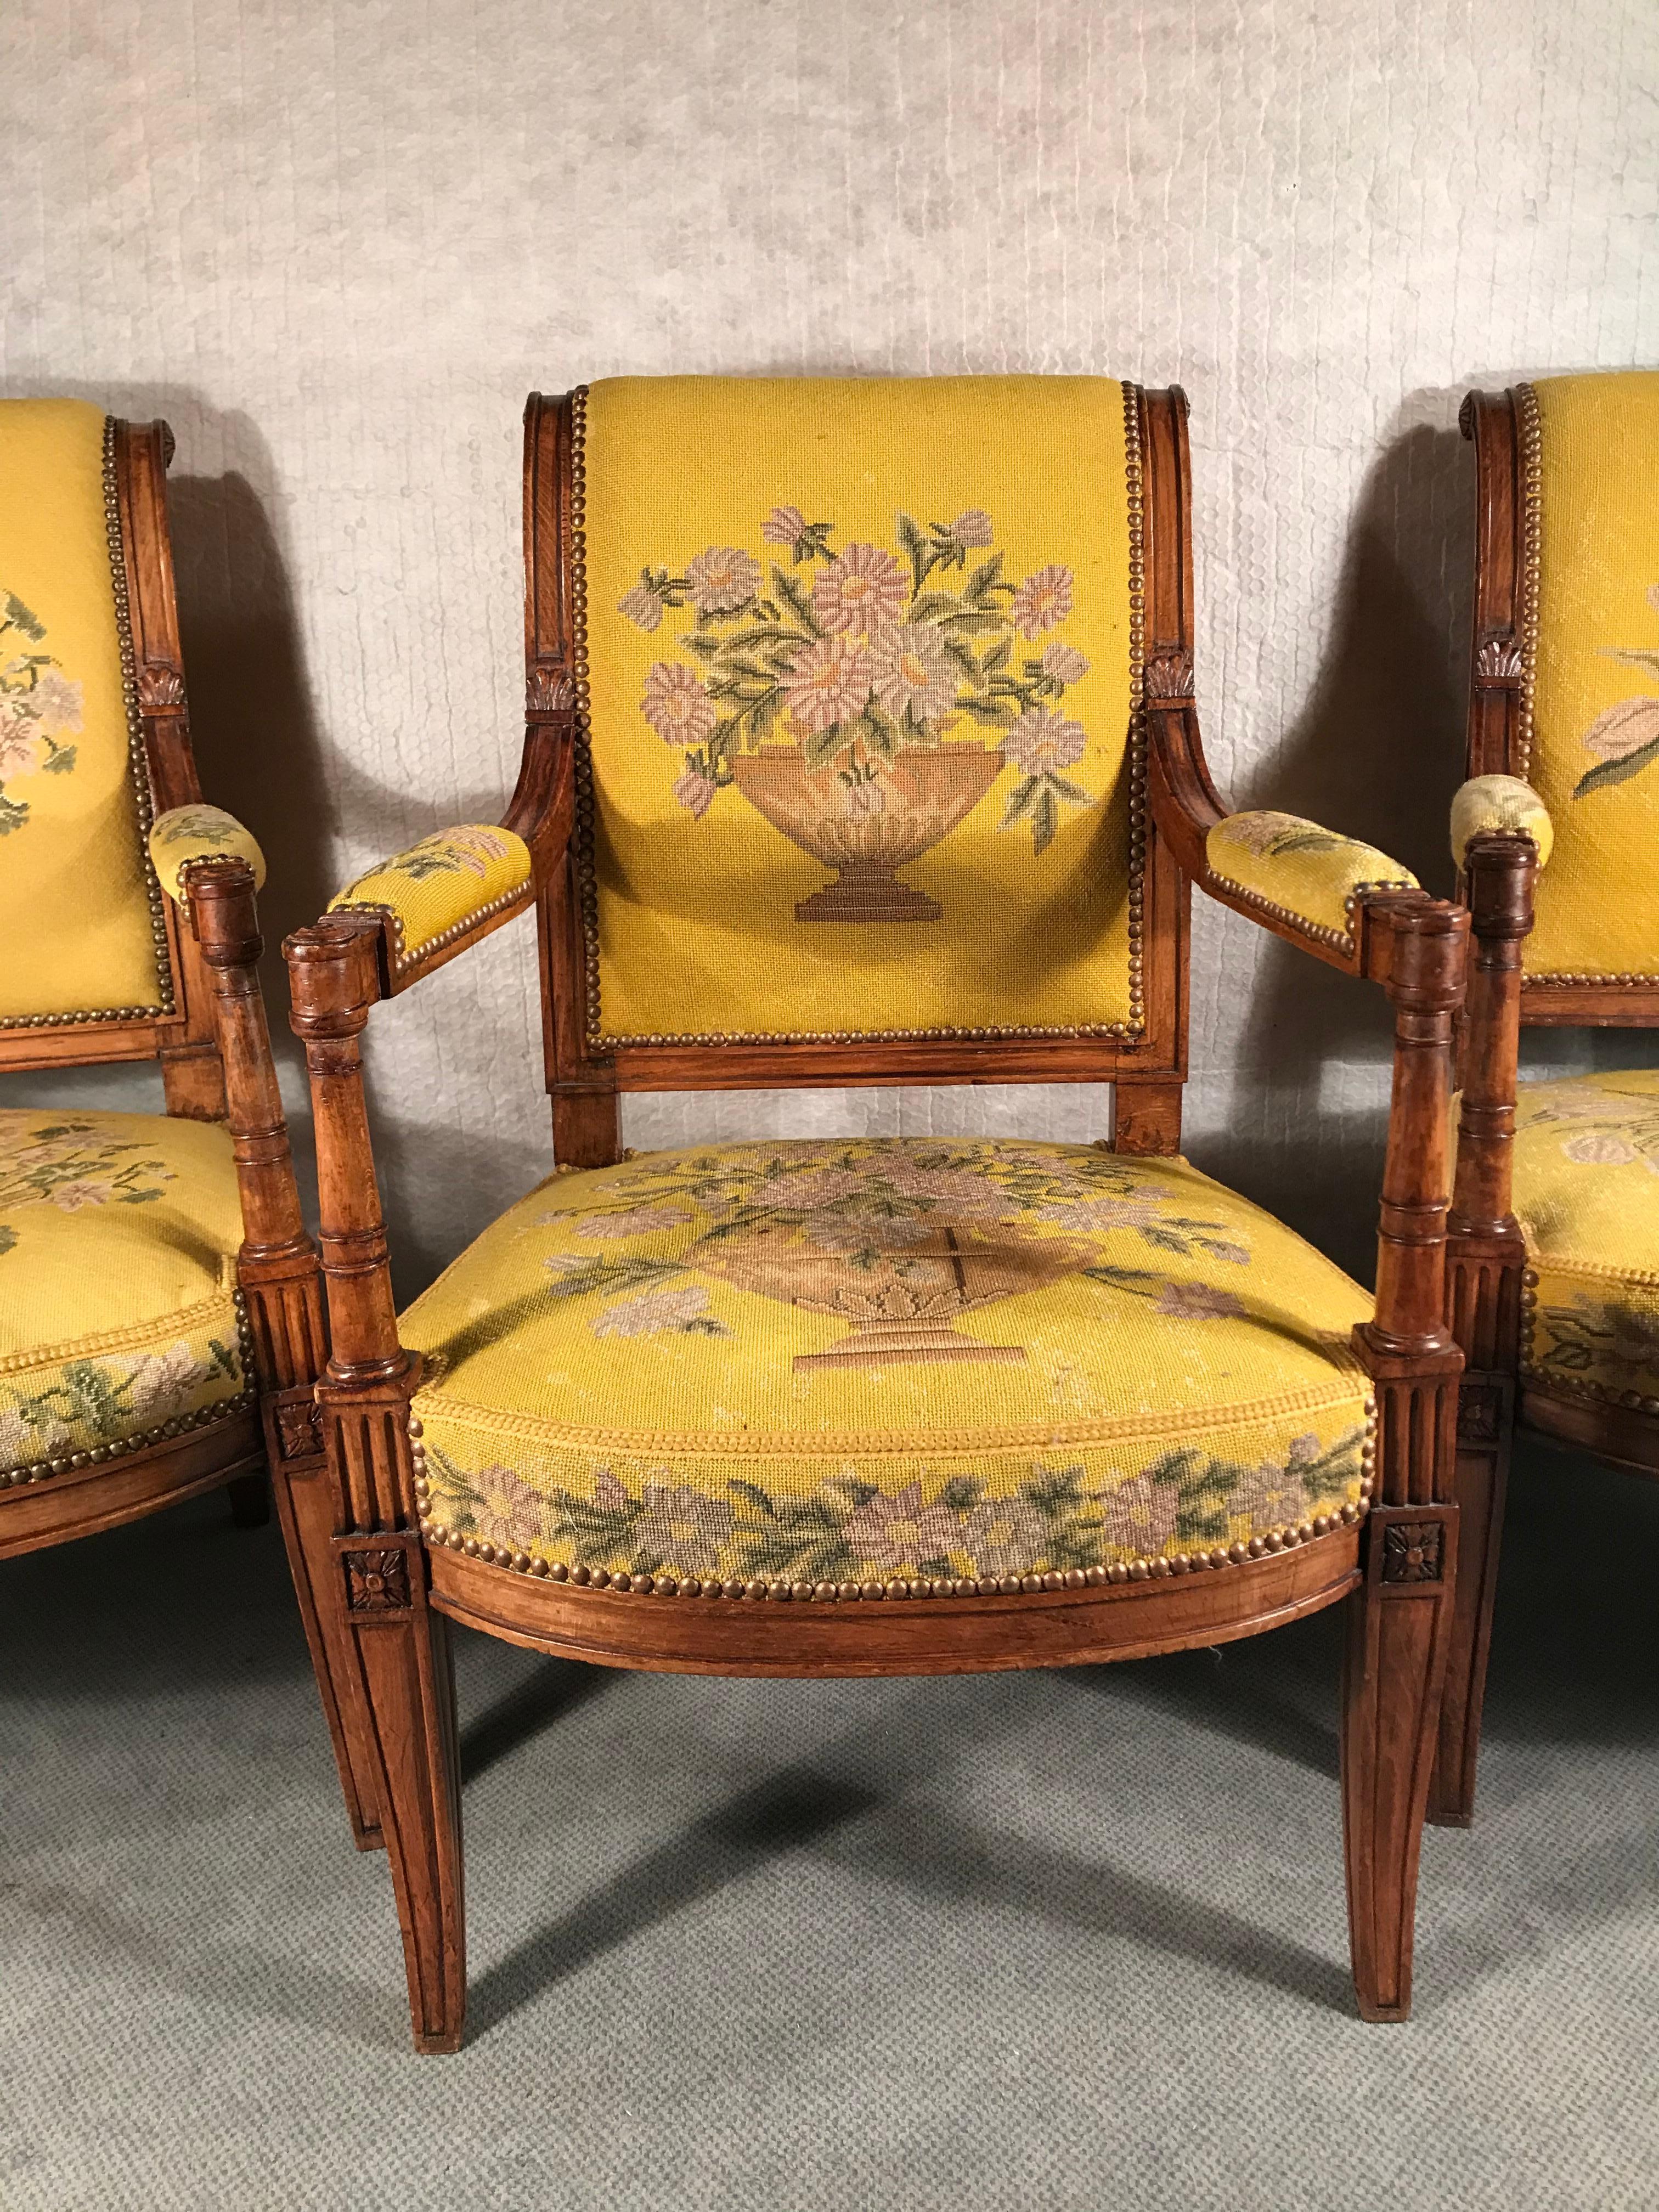 Drei Sessel, Directoire-Stil, Frankreich, 19. Jahrhundert
Diese eleganten Stühle sind aus Ahornholz gefertigt und haben fein geschnitzte Details. Die Stühle sind mit einem hübschen Stickereistoff bezogen. Sie sind in gutem Originalzustand. 
Die